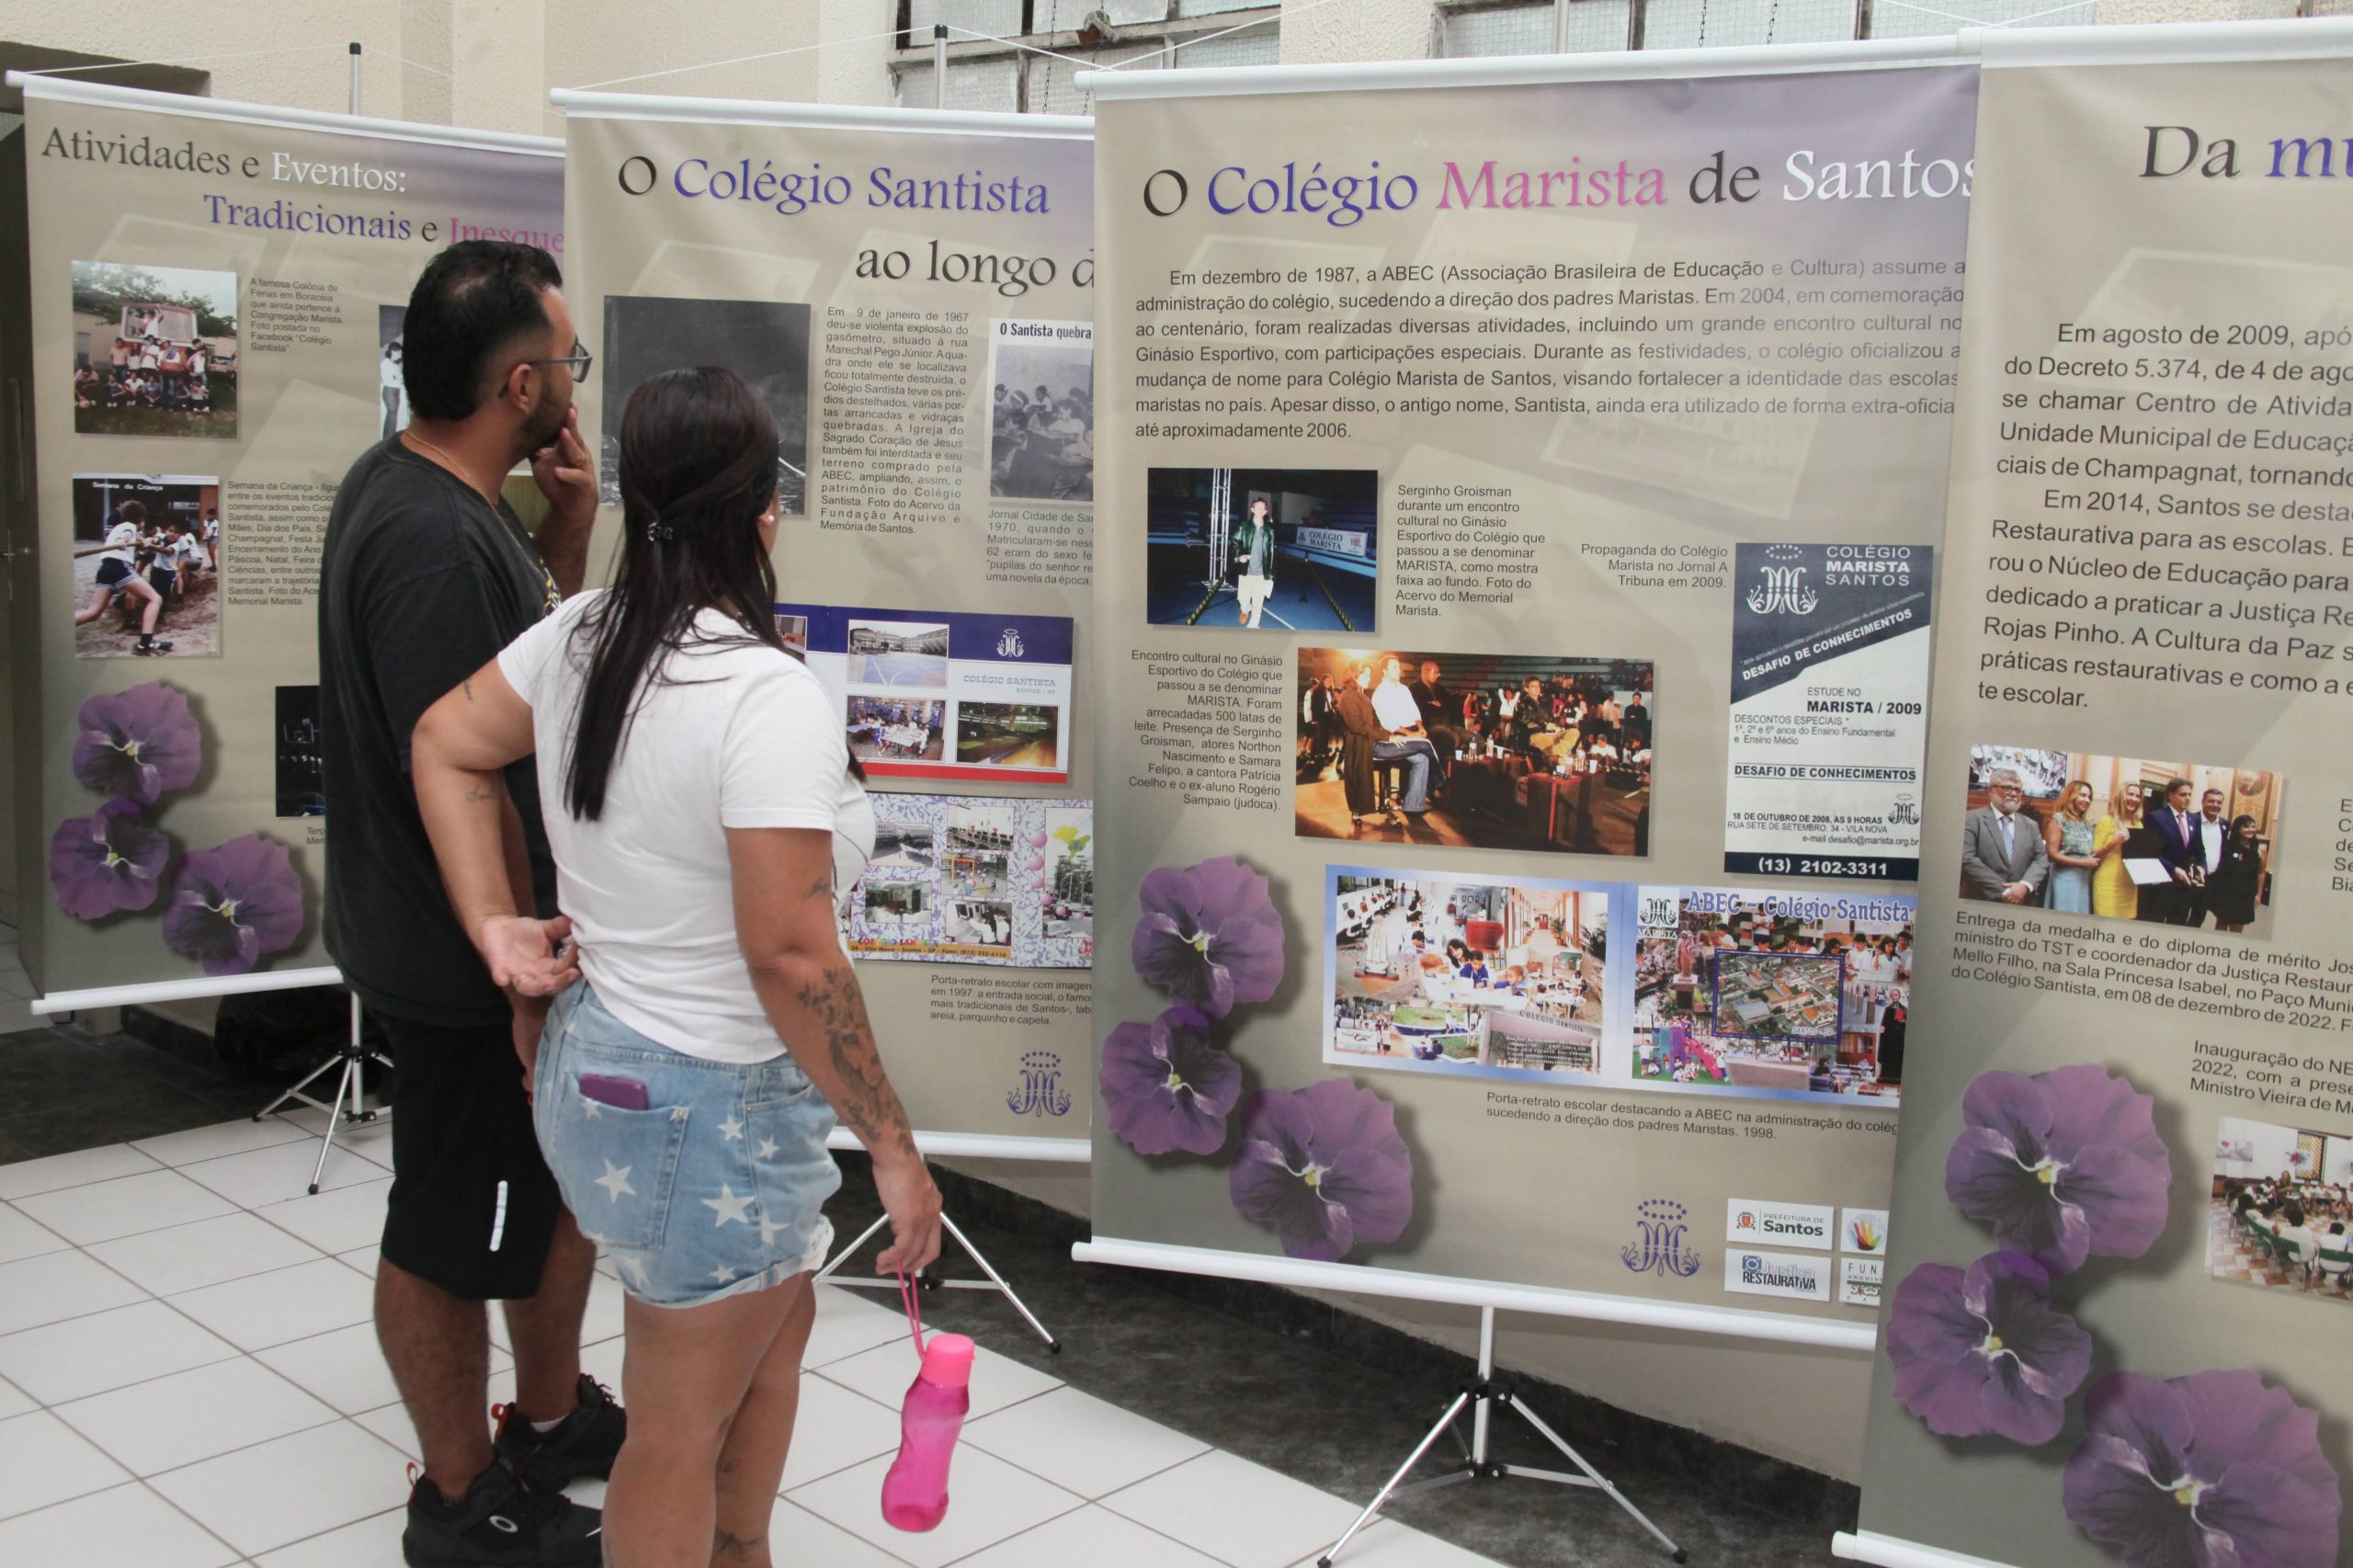 Exposição itinerante dos 120 anos do Colégio Santista passará por prédios públicos | Jornal da Orla